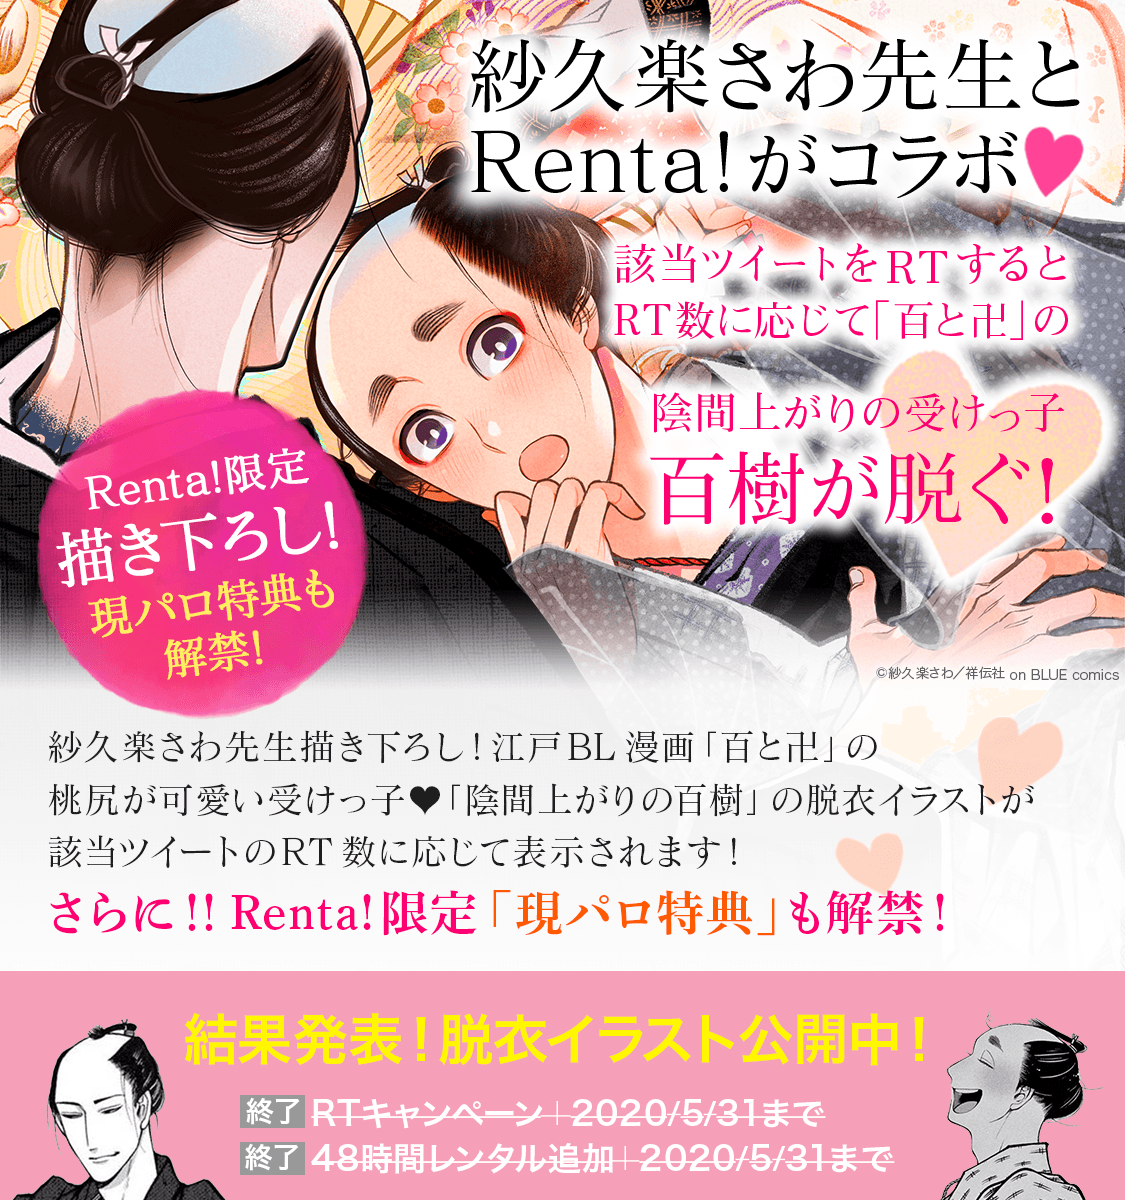 Renta 百と卍脱衣キャンペーン特集